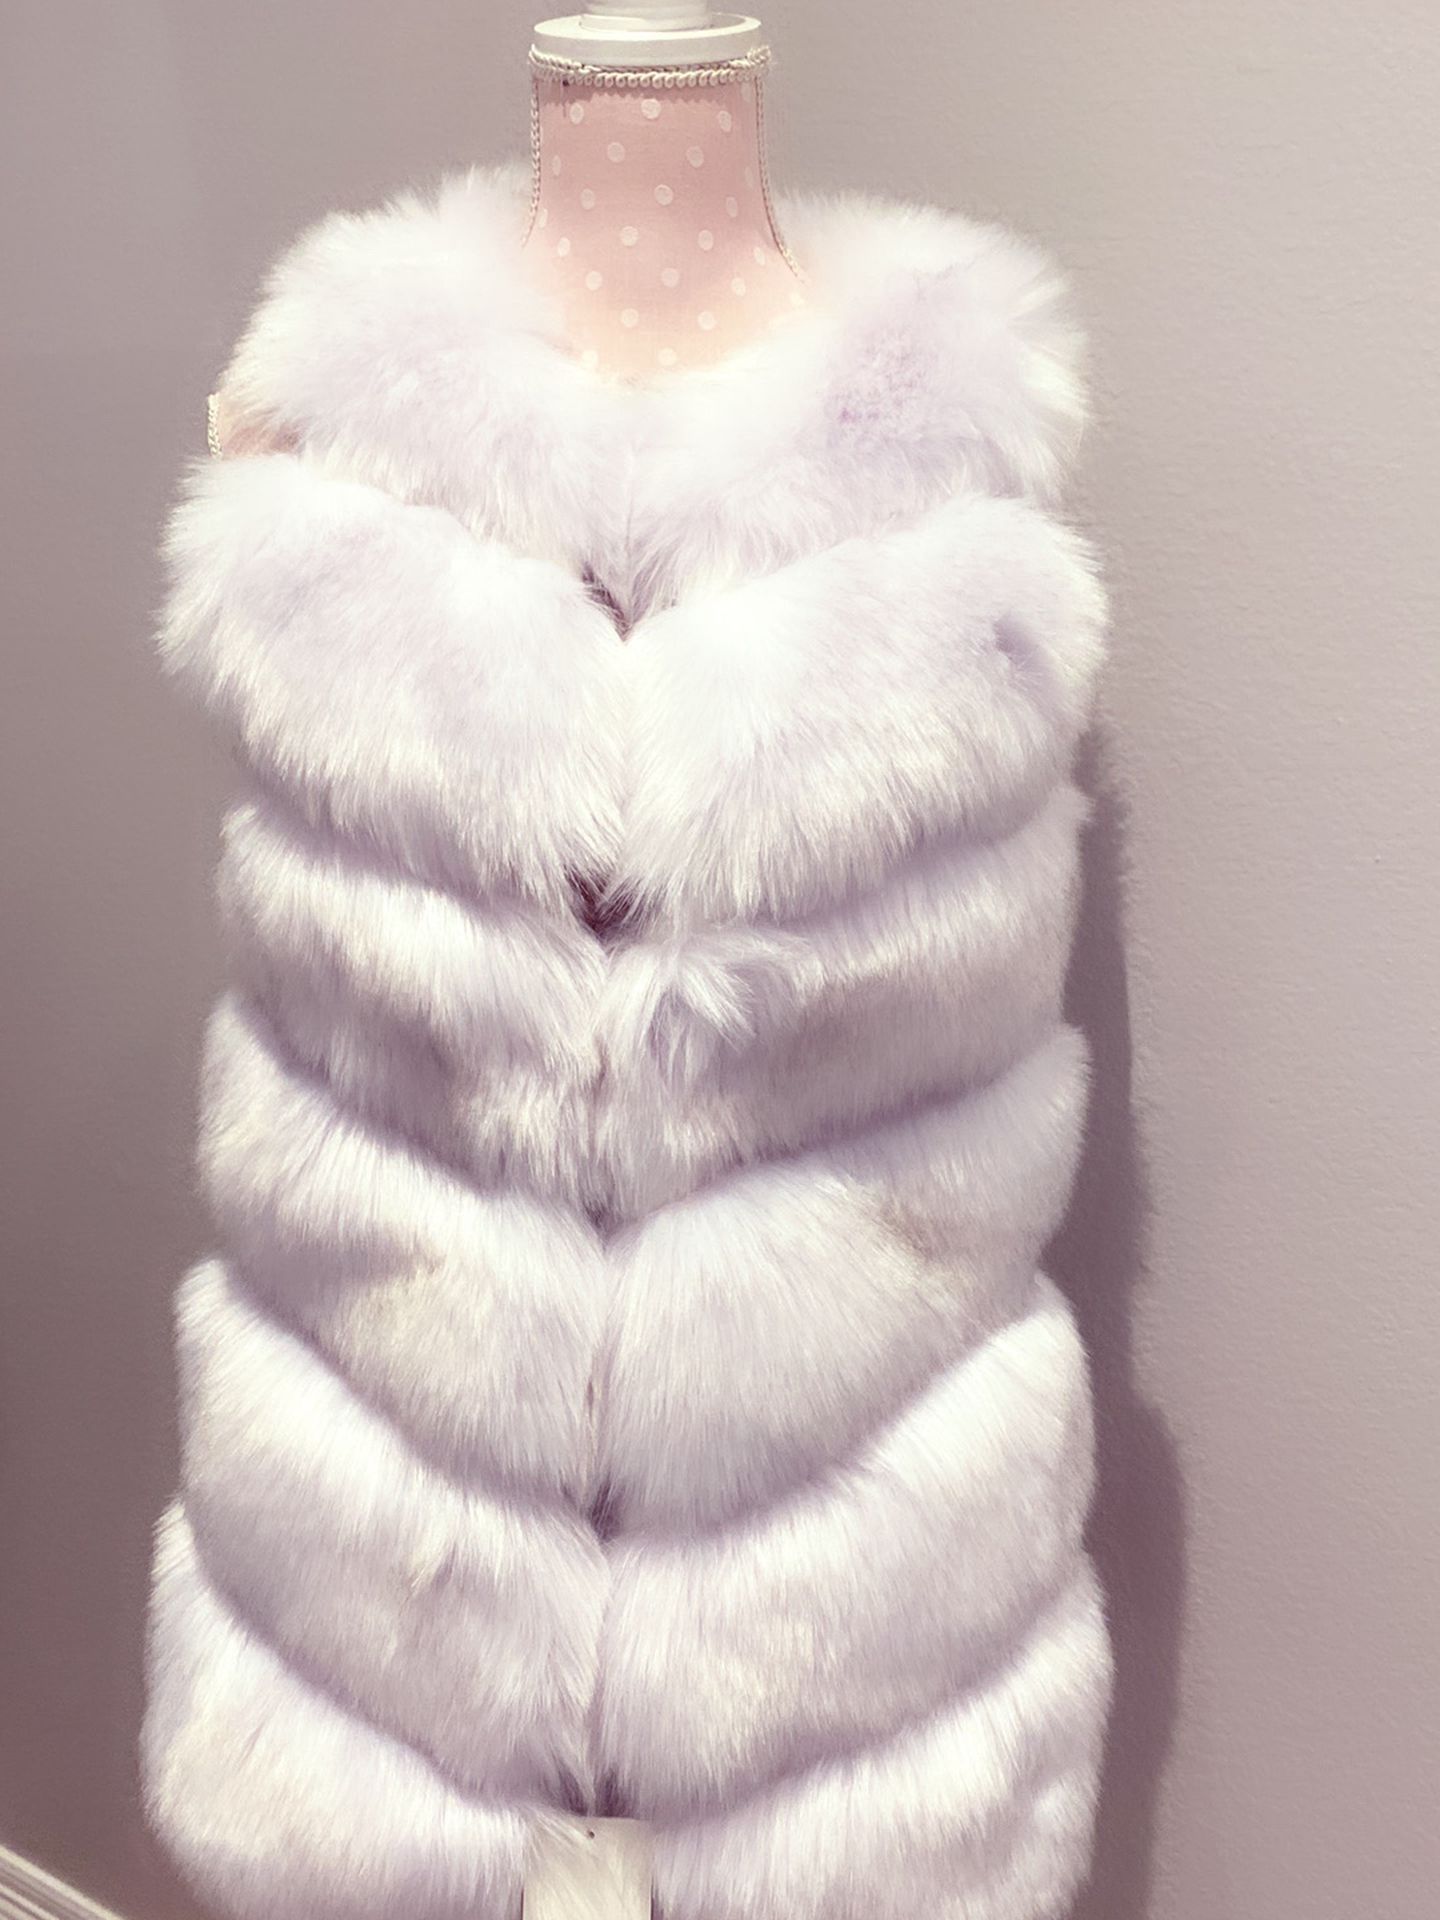 High Quality Faux Fur White Vest Coat Brand New Size Medium Fashion Stylish Luxury